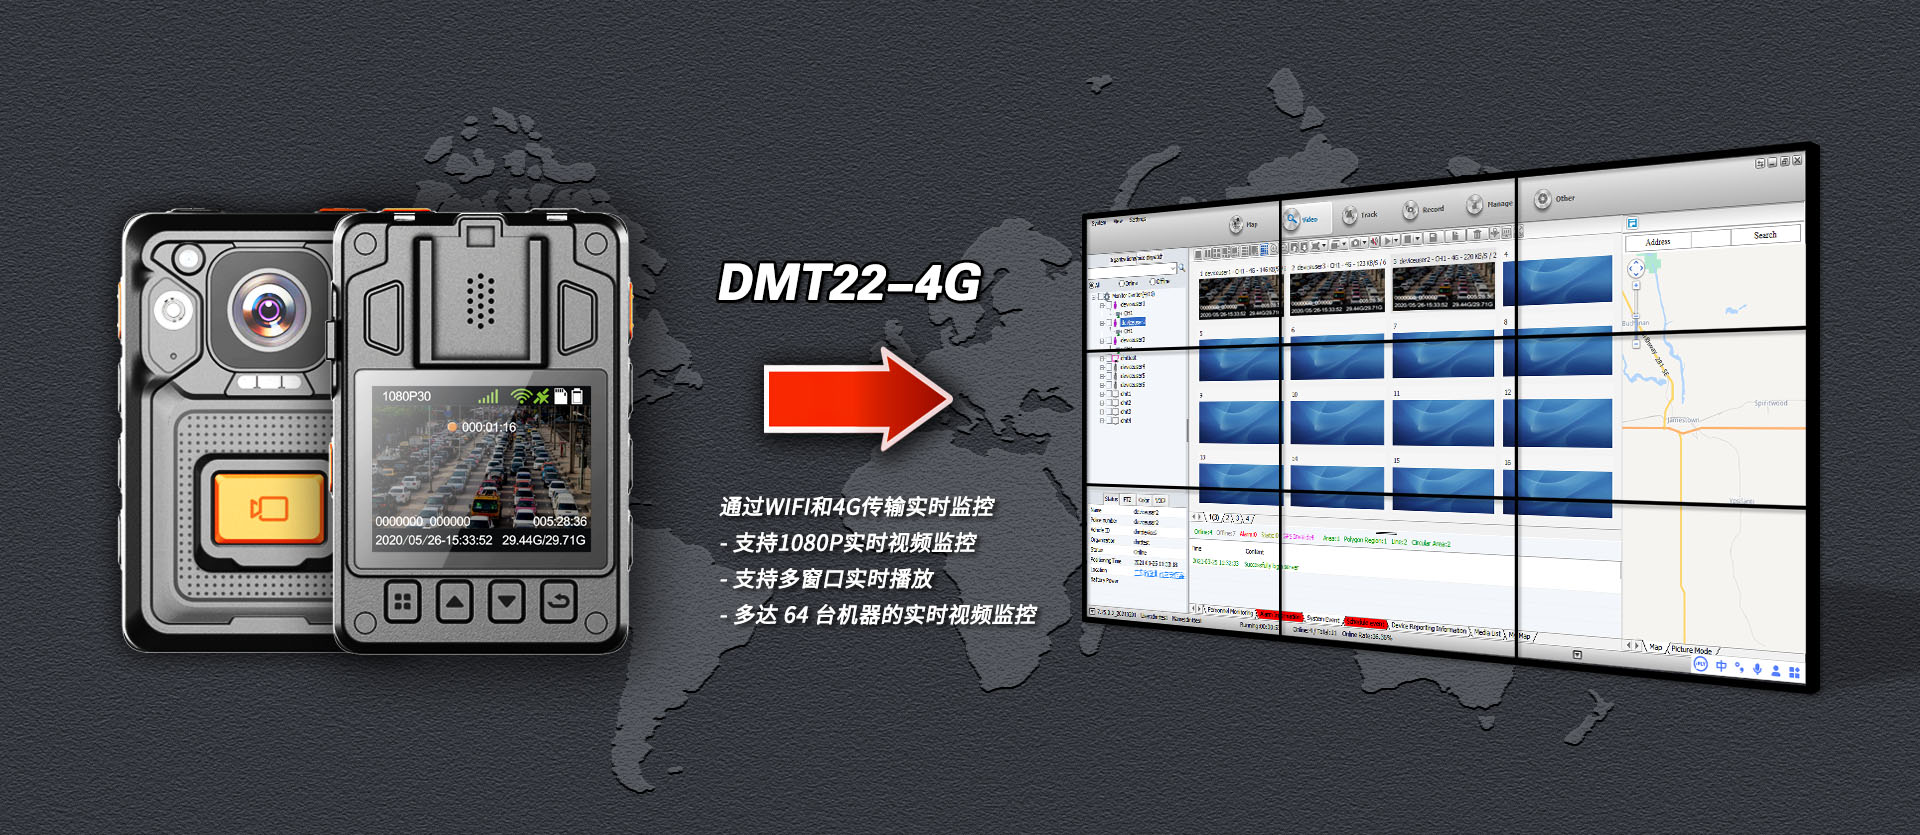 DMT22-4G-zhongwen